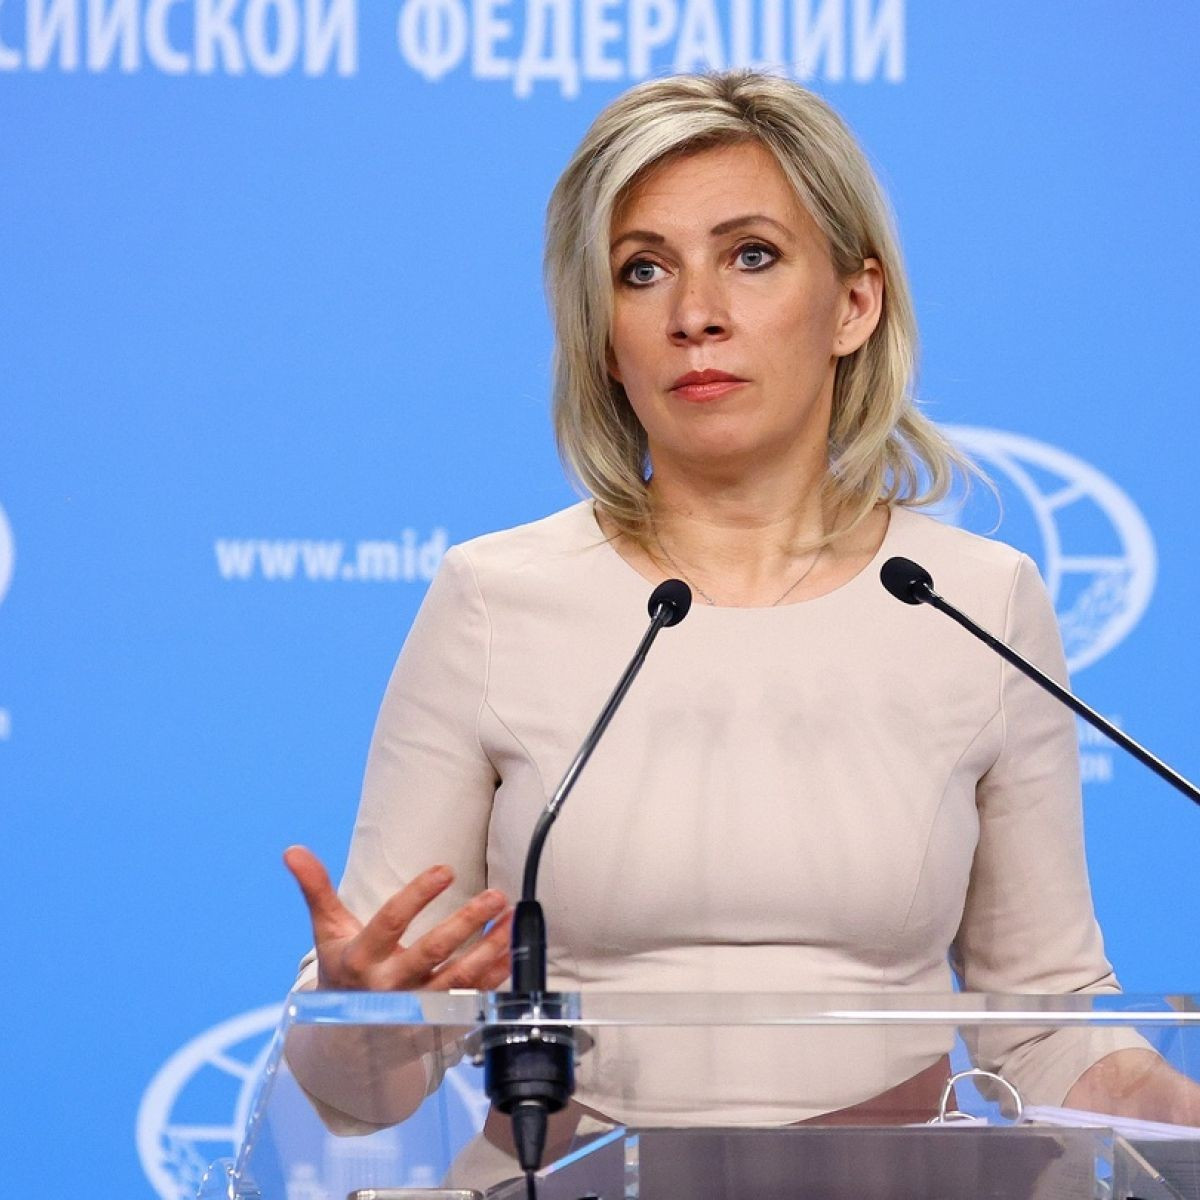 Nhóm giám sát OSCE ở Đông Ukraine bị đe dọa, Nga thả nhẹ cảnh cáo, nói Đức-Pháp chớ 'lơ'